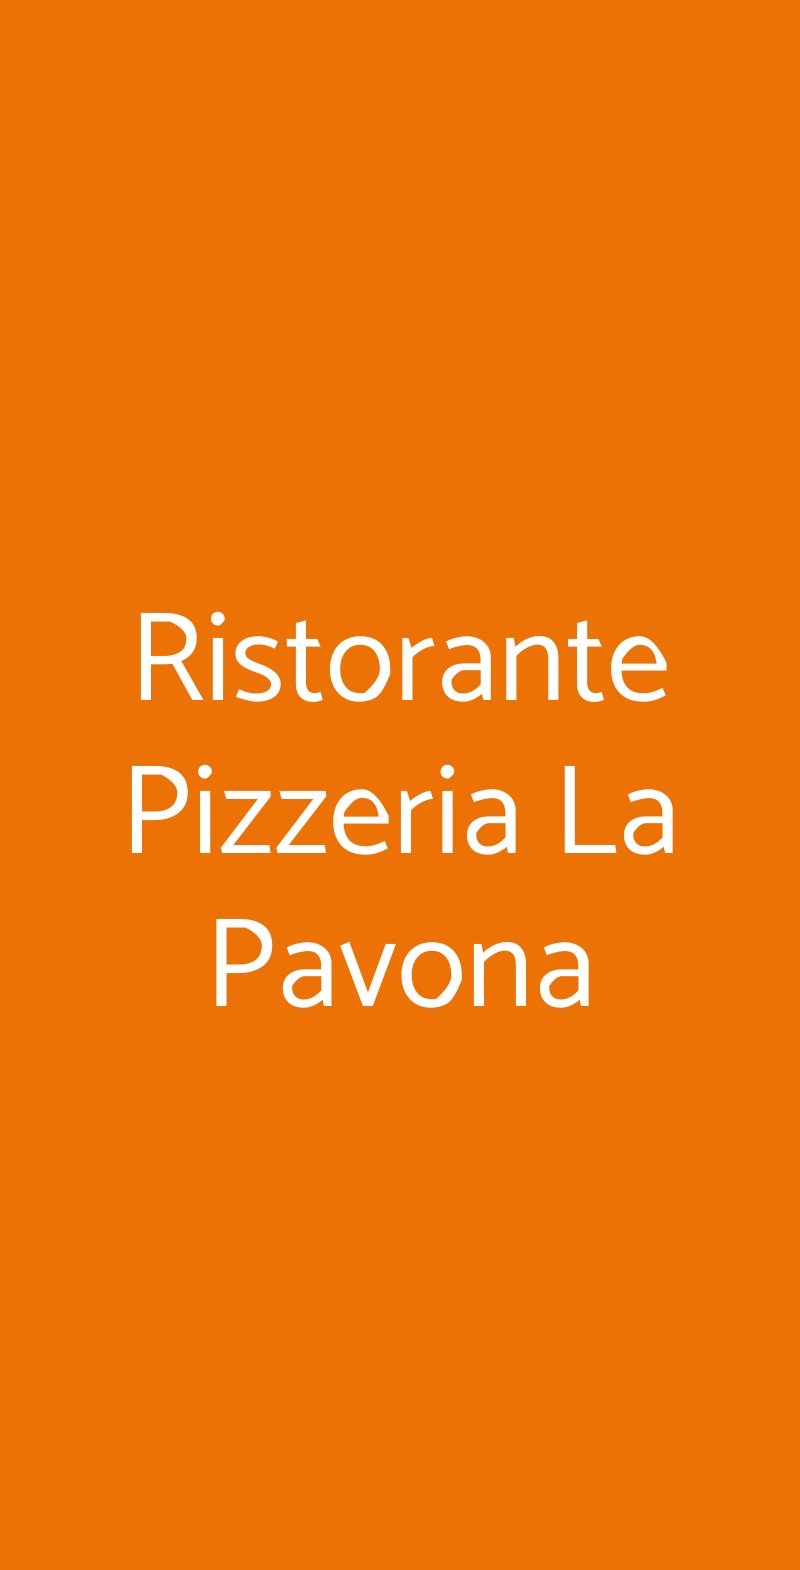 Ristorante Pizzeria La Pavona Faenza menù 1 pagina